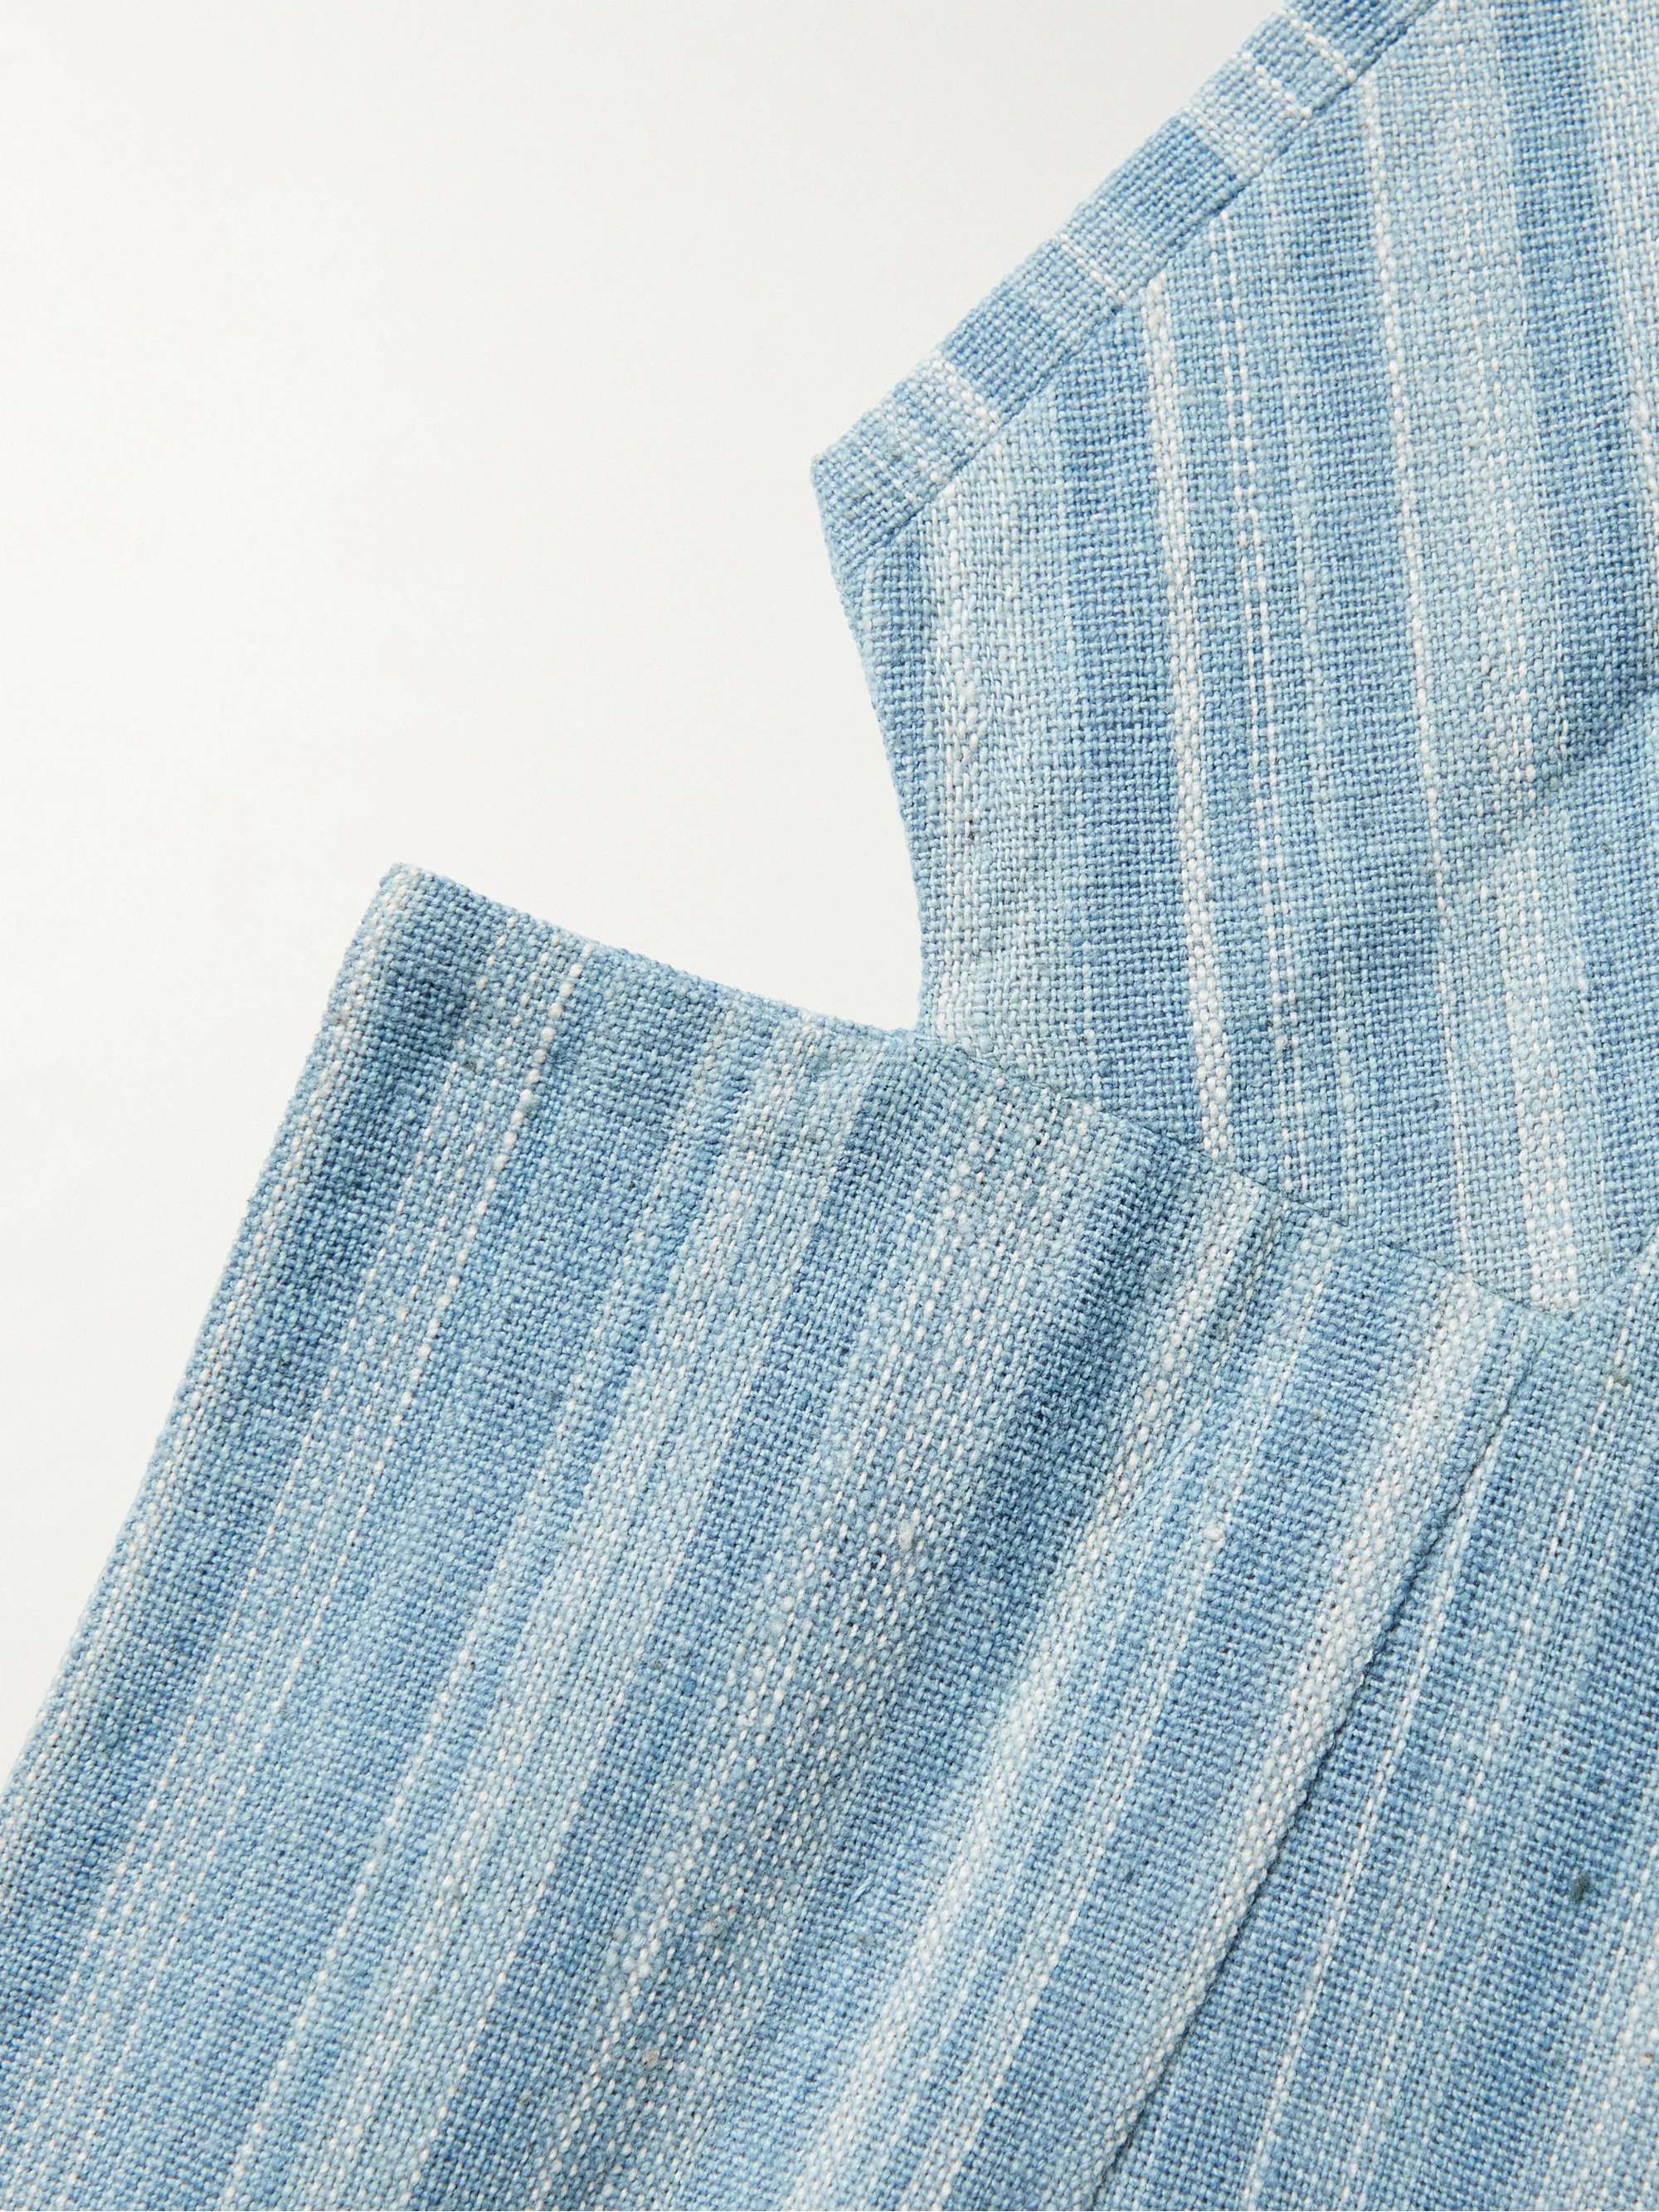 11.11/ELEVEN ELEVEN Unstructured Indigo-Dyed Striped Organic Cotton Blazer